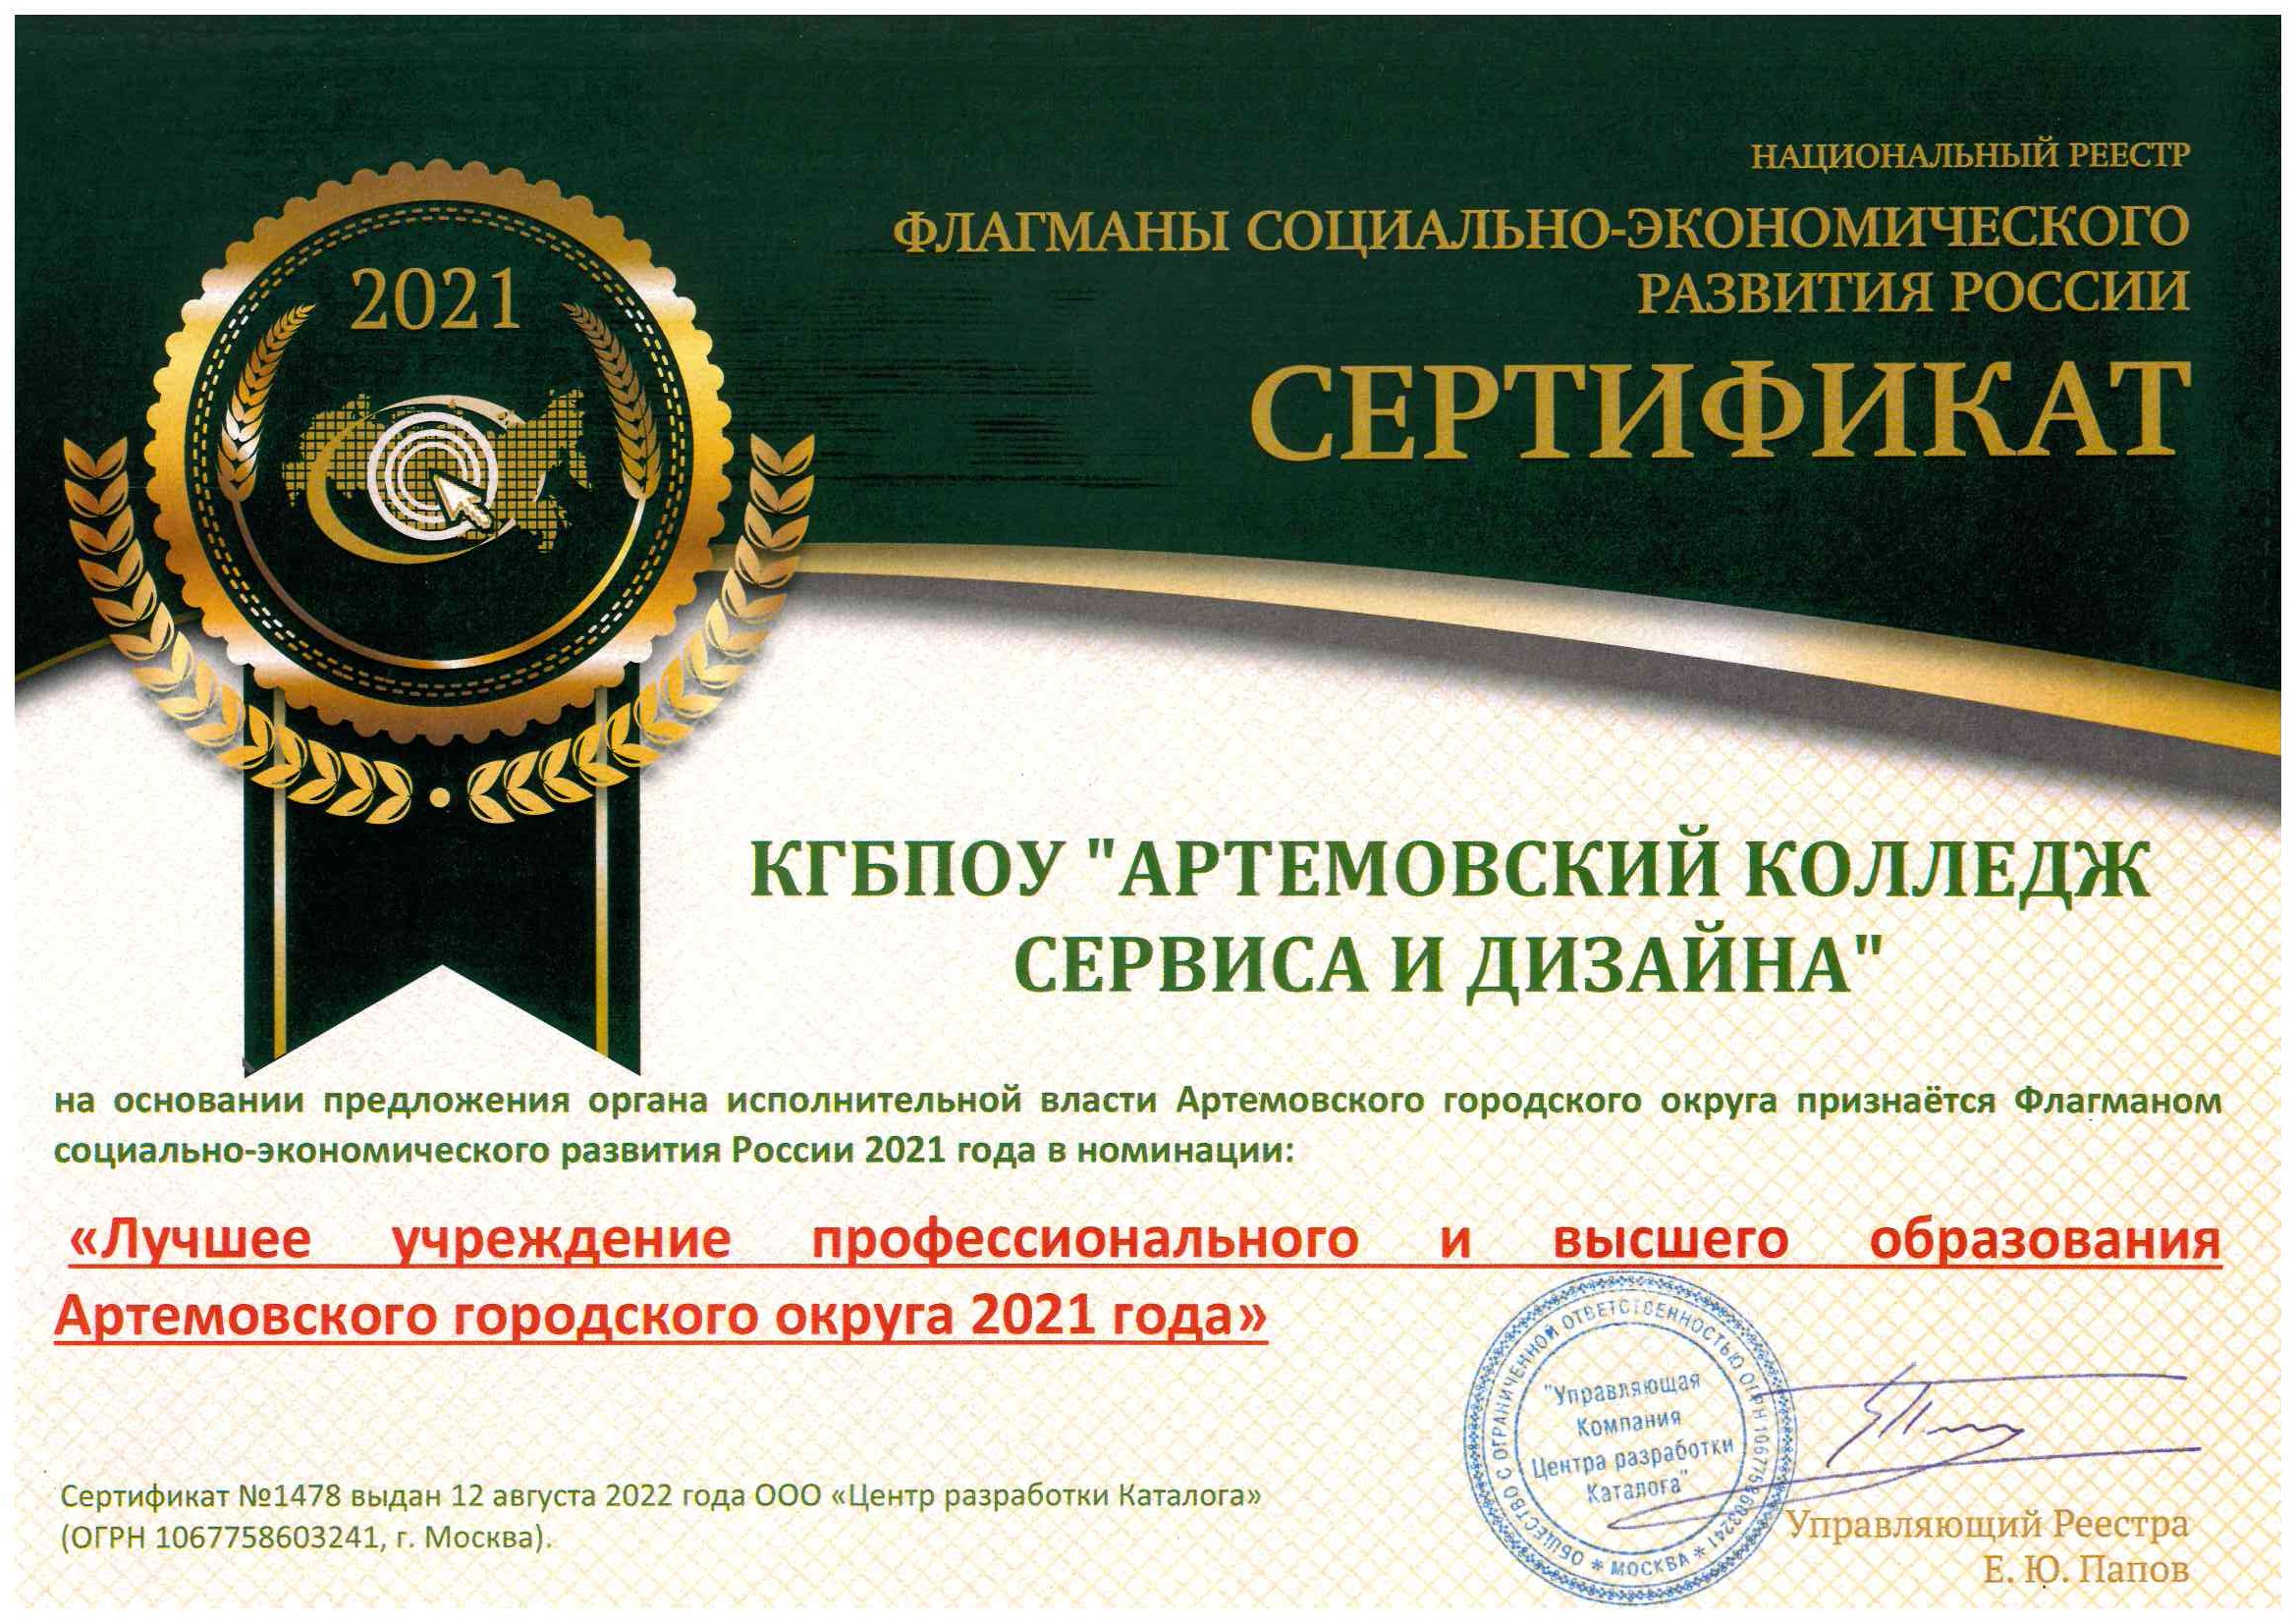 Артемовский колледж сервиса и дизайна лучший колледж 2021 года по версии национального реестра социально-экономического развития России